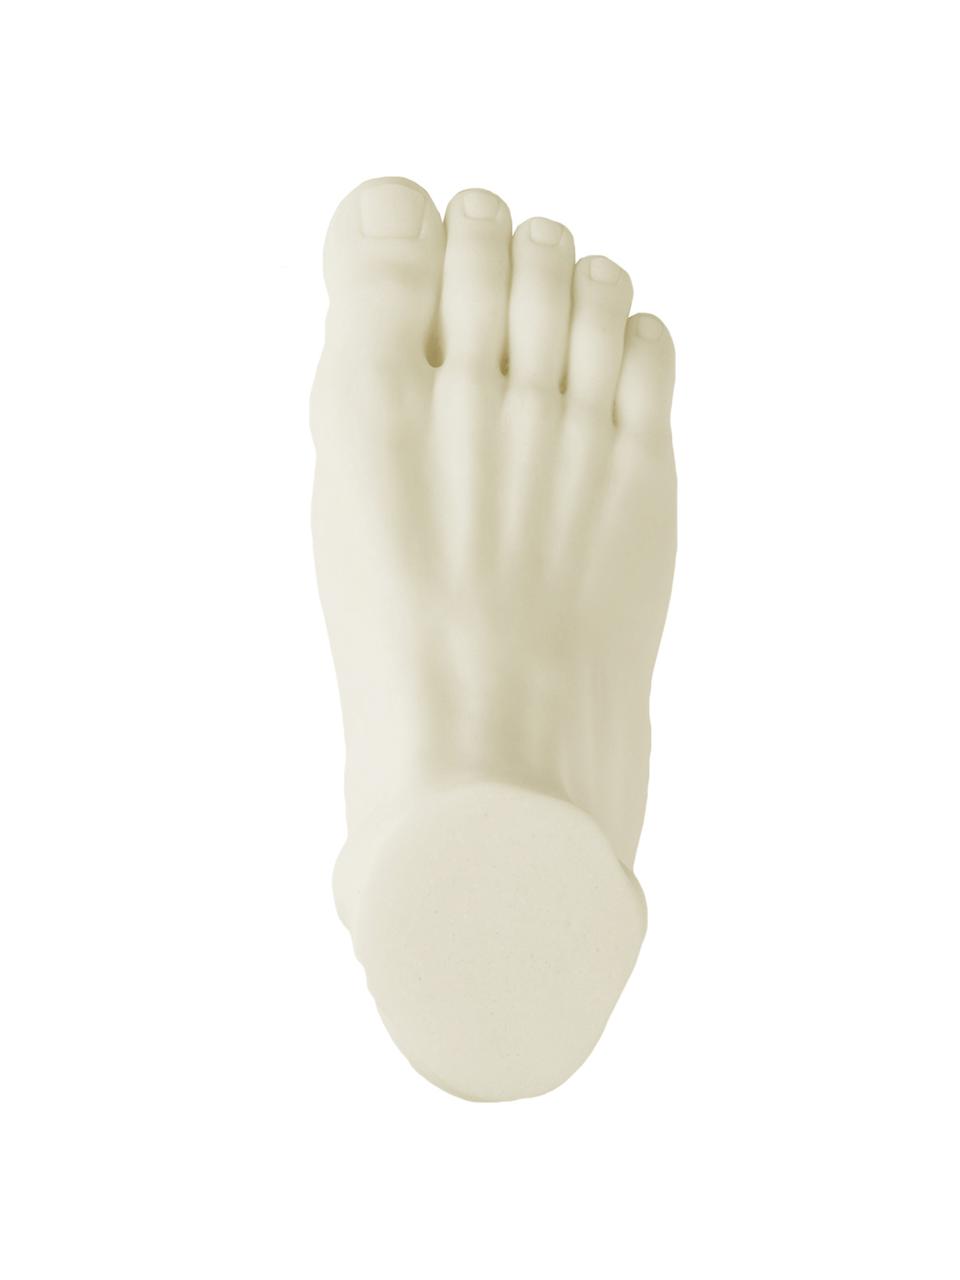 Dekorácia Foot, Živica, mramorový prášok, Krémovobiela, Š 28 x V 15 cm